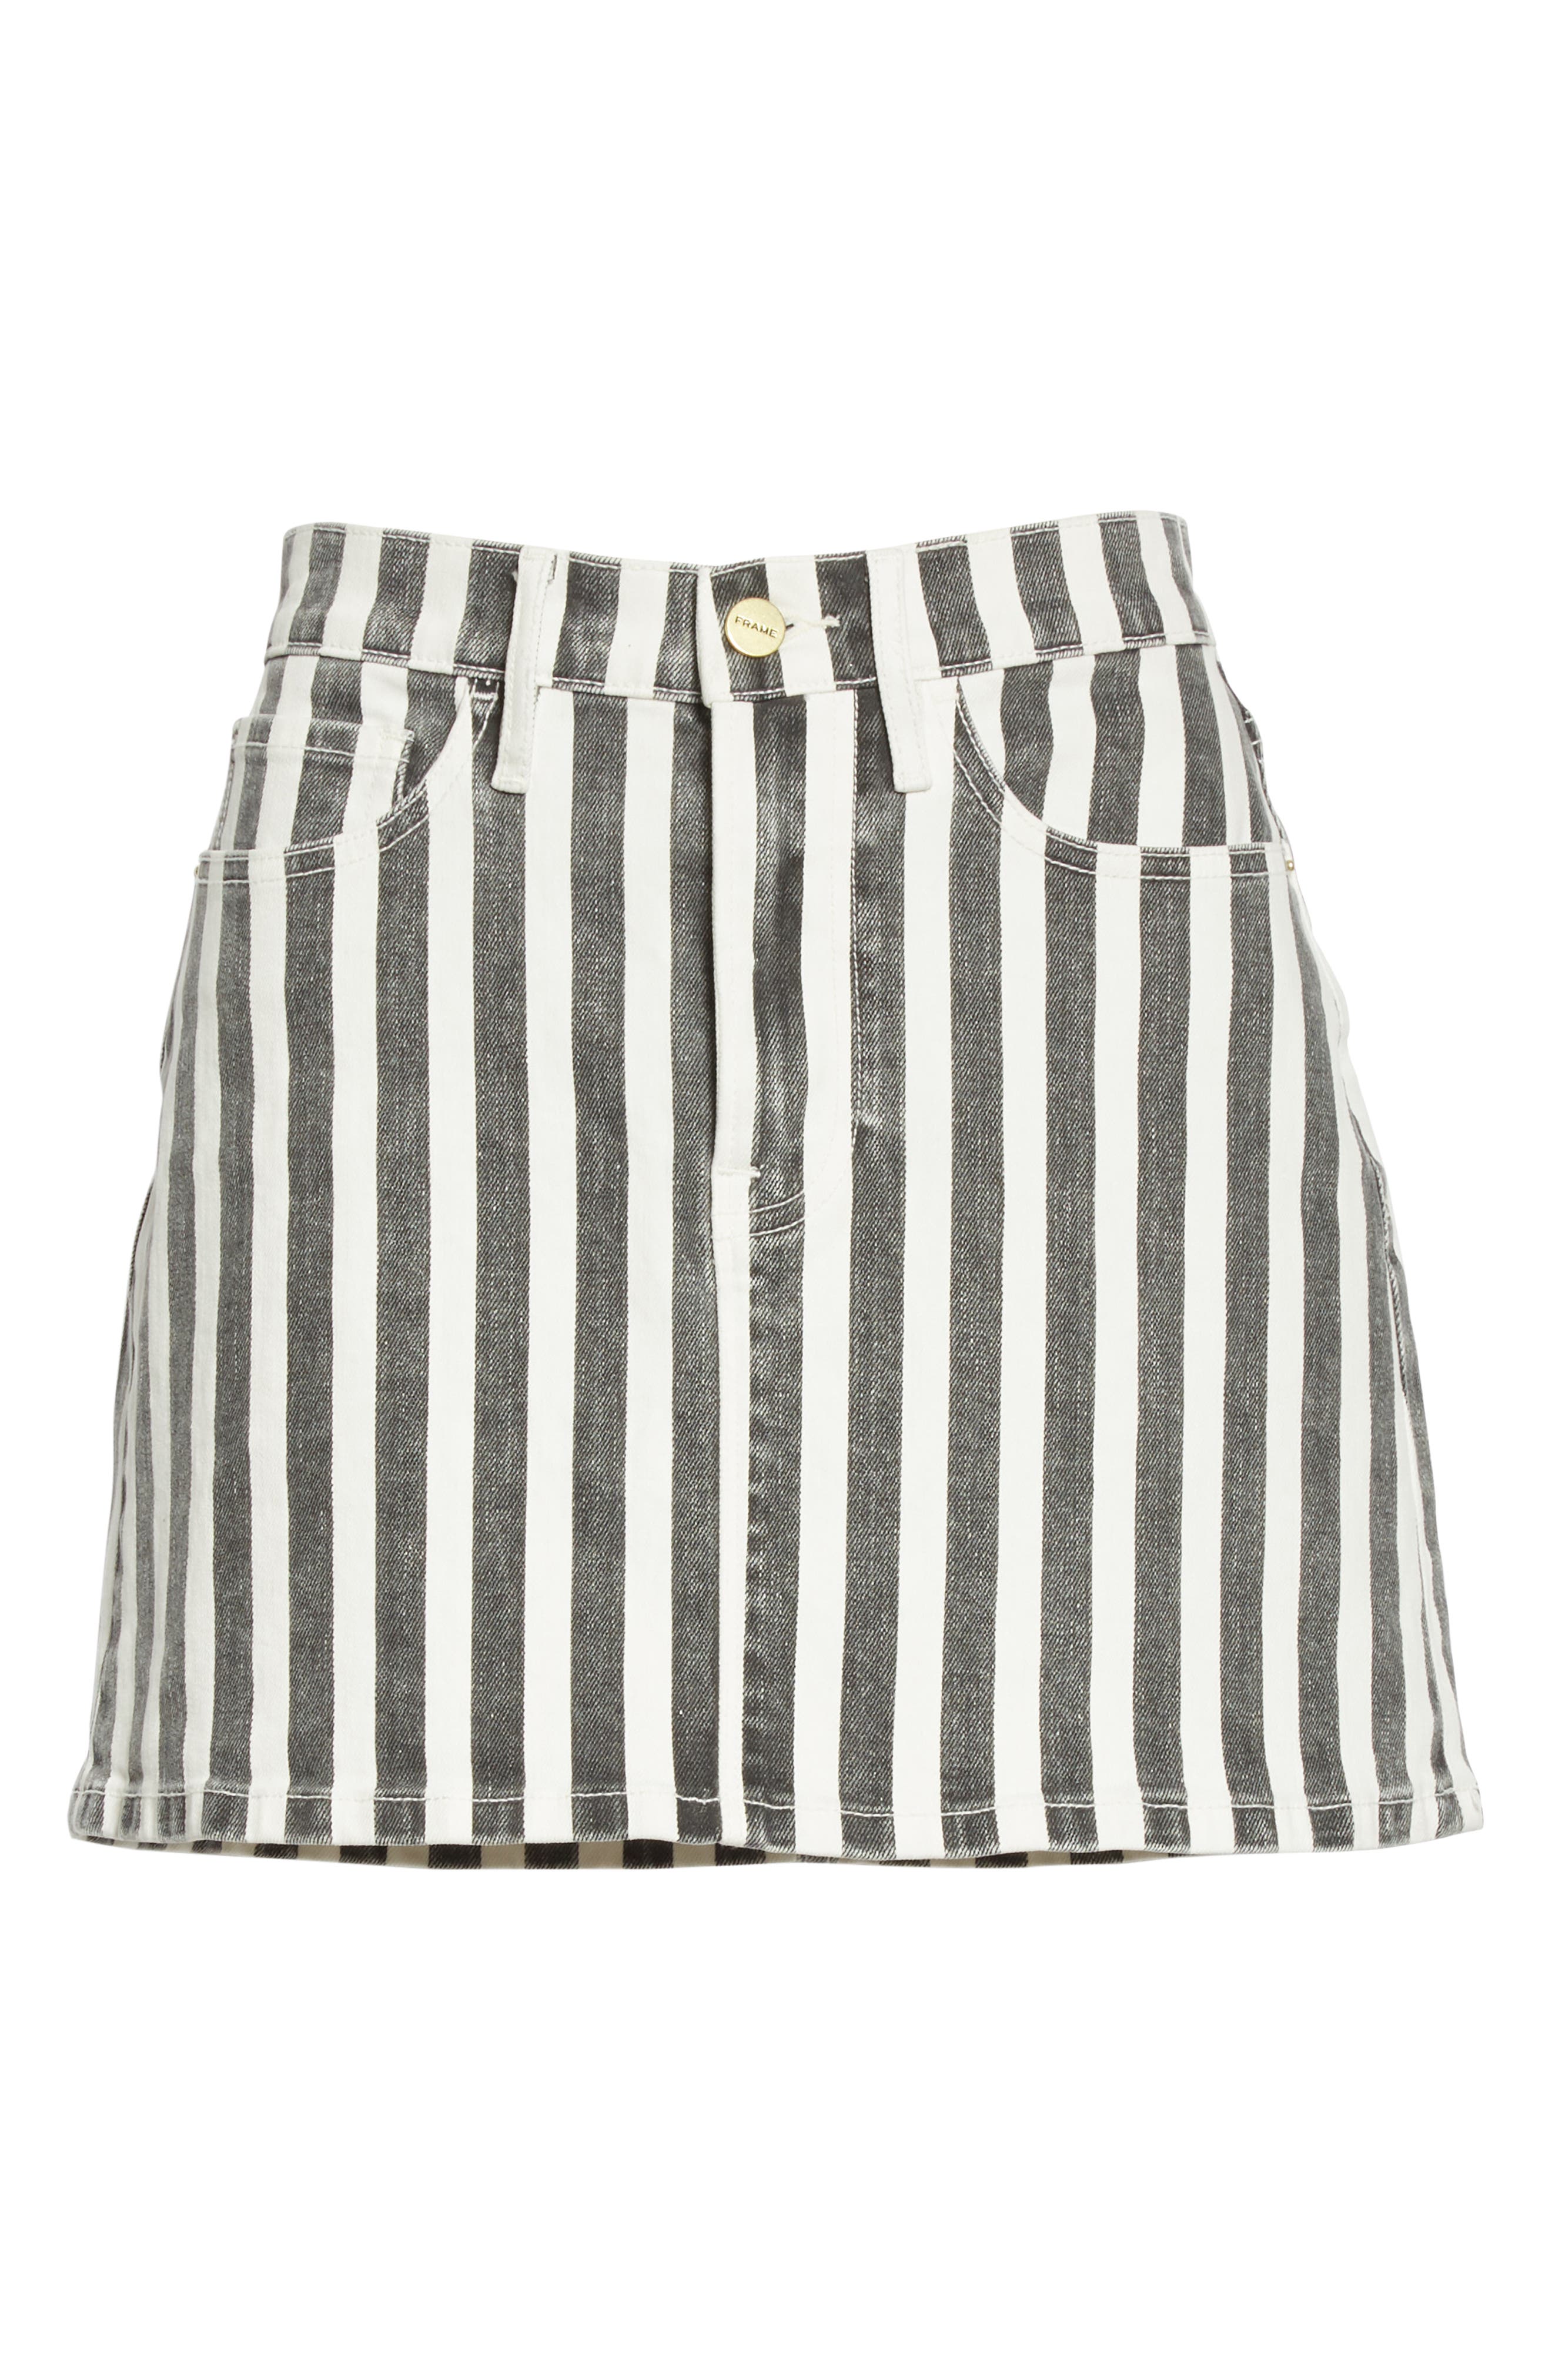 black and white striped denim skirt